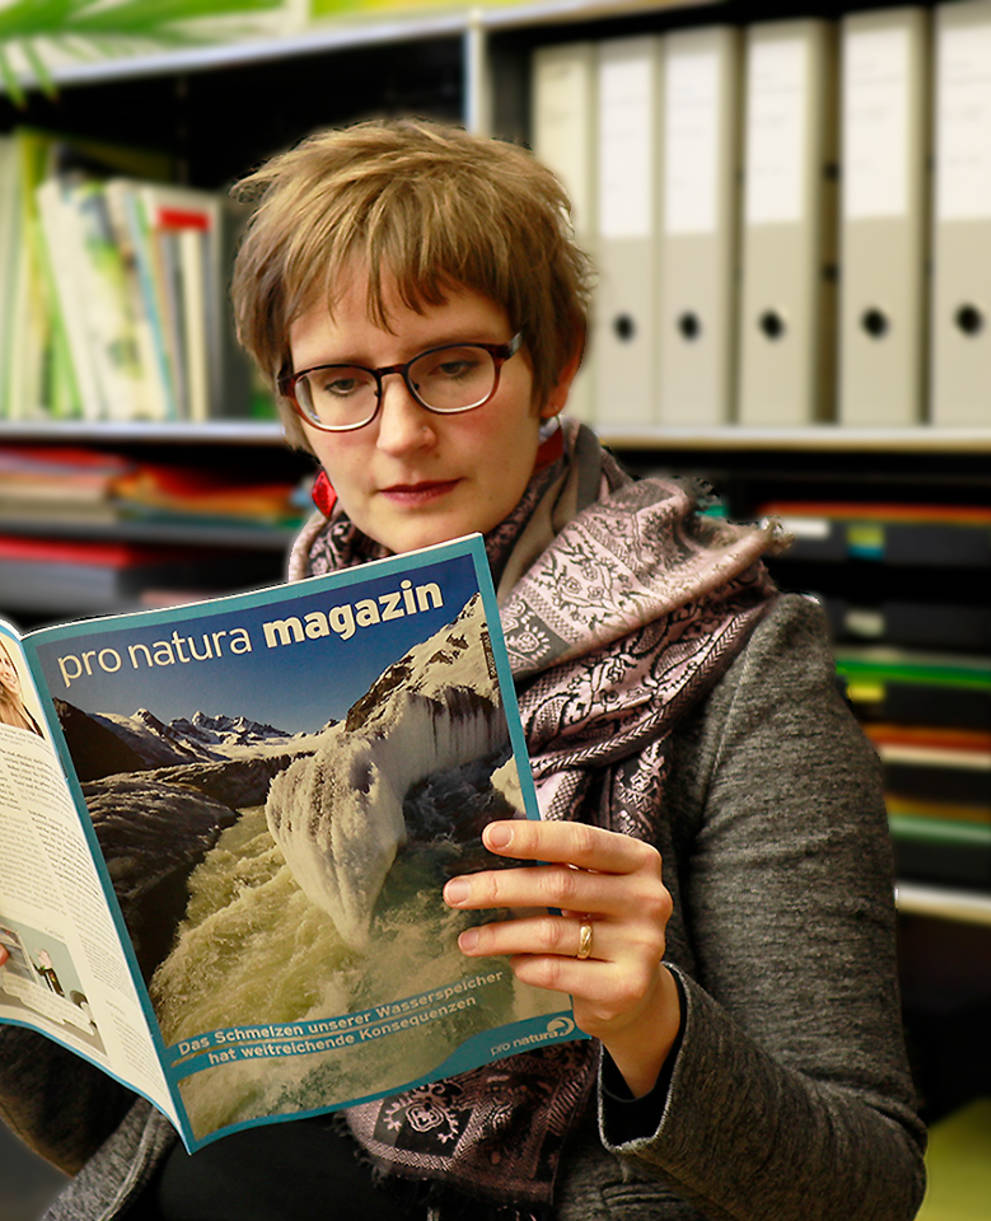 Das Pro Natura Magazin ist die führende Zeitschrift in der Schweiz zum Thema Naturschutz